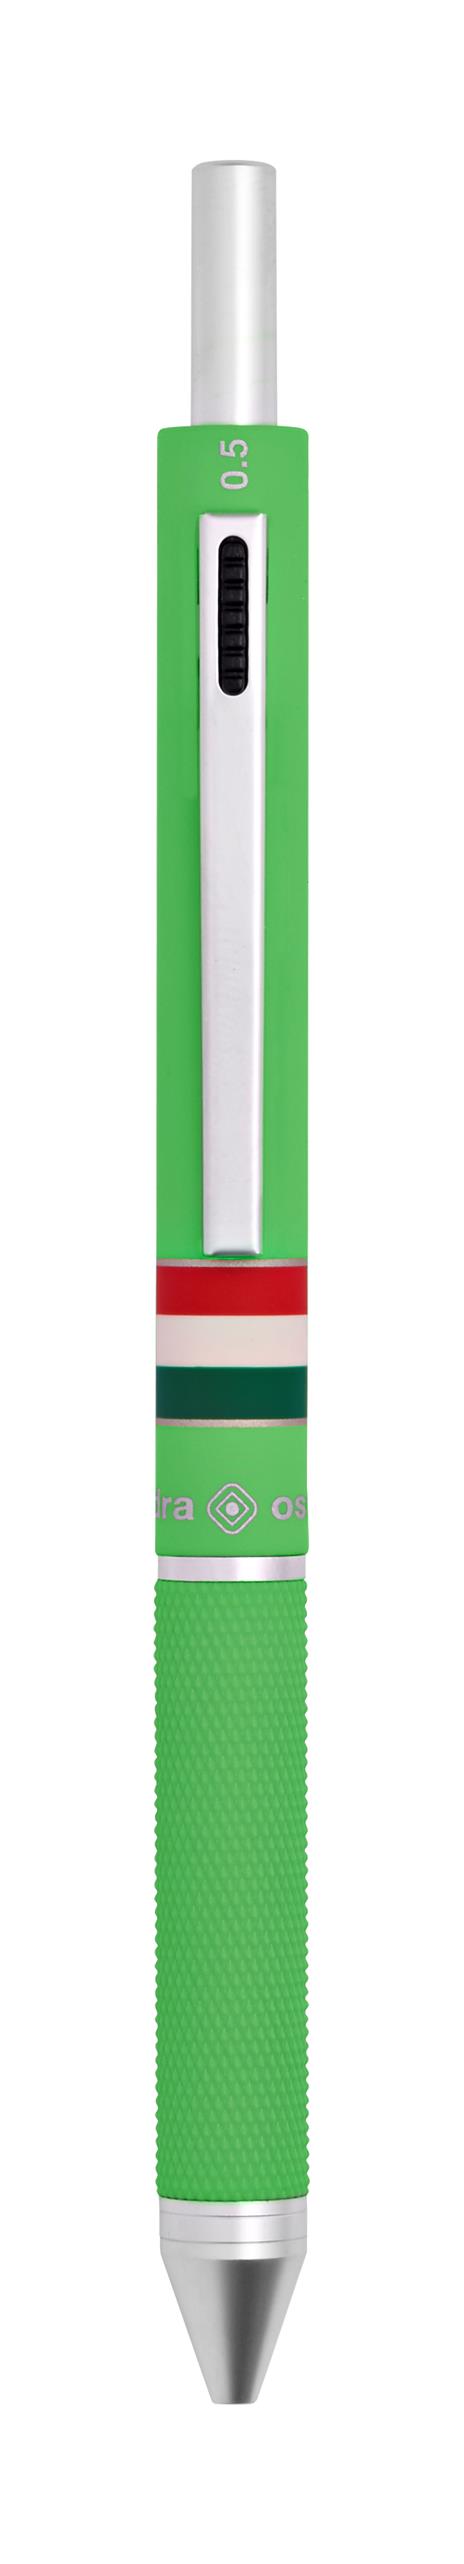 Penna a sfera 4 funzioni Quadra Italia Gommata Verde Chiaro - 4